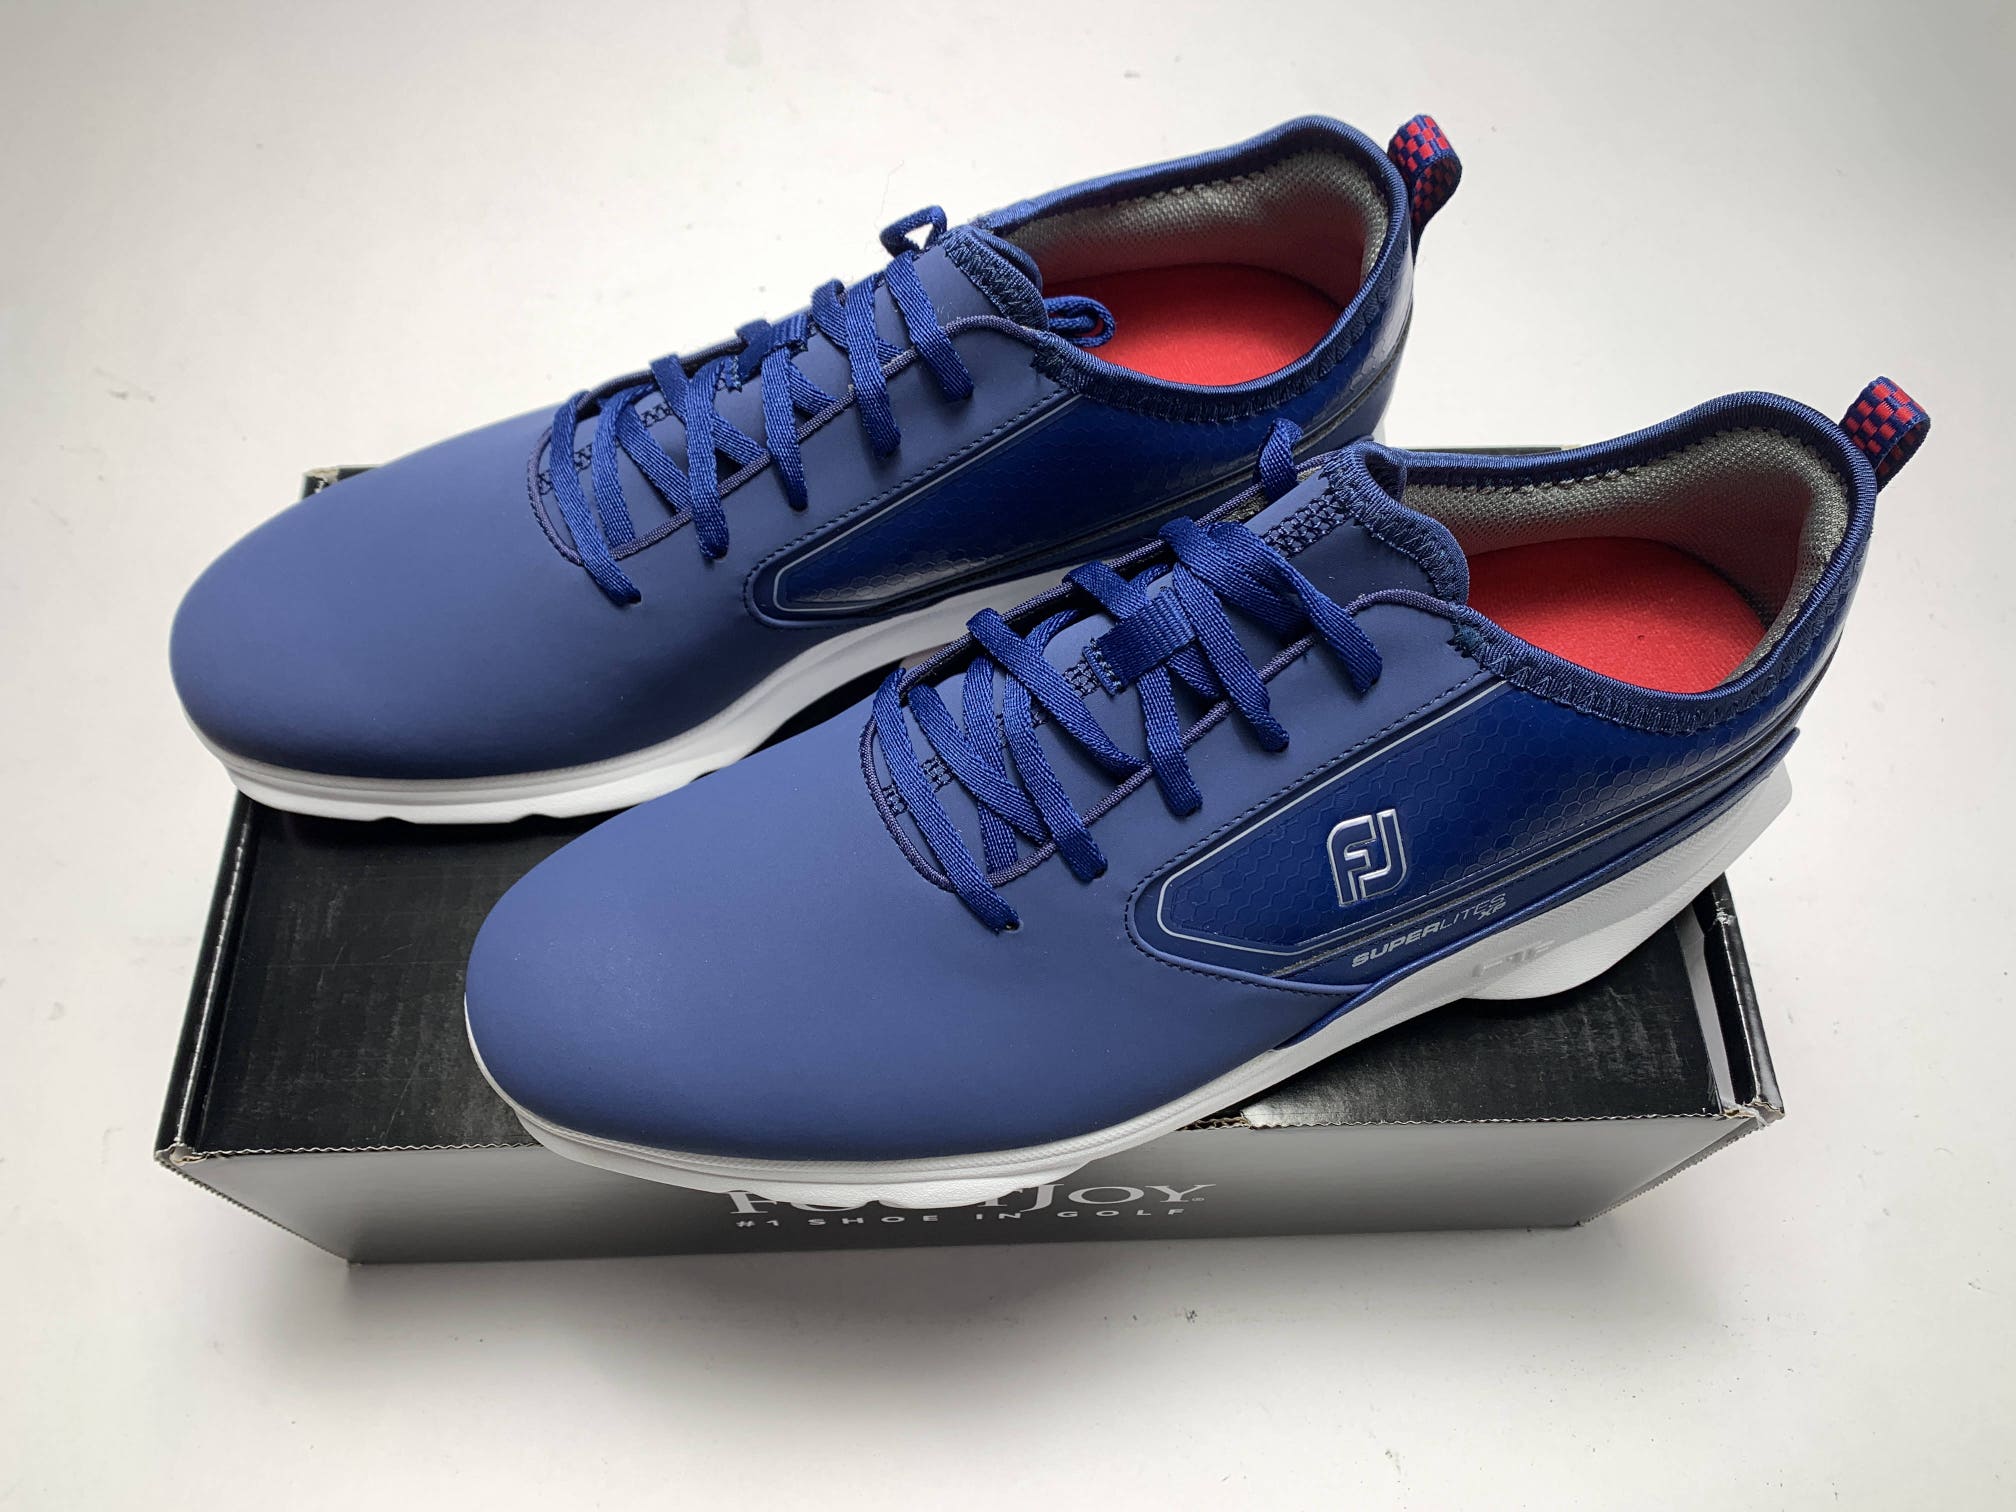 FootJoy Superlites XP Golf Shoes Blue Red White Men's SZ 11 (58090)